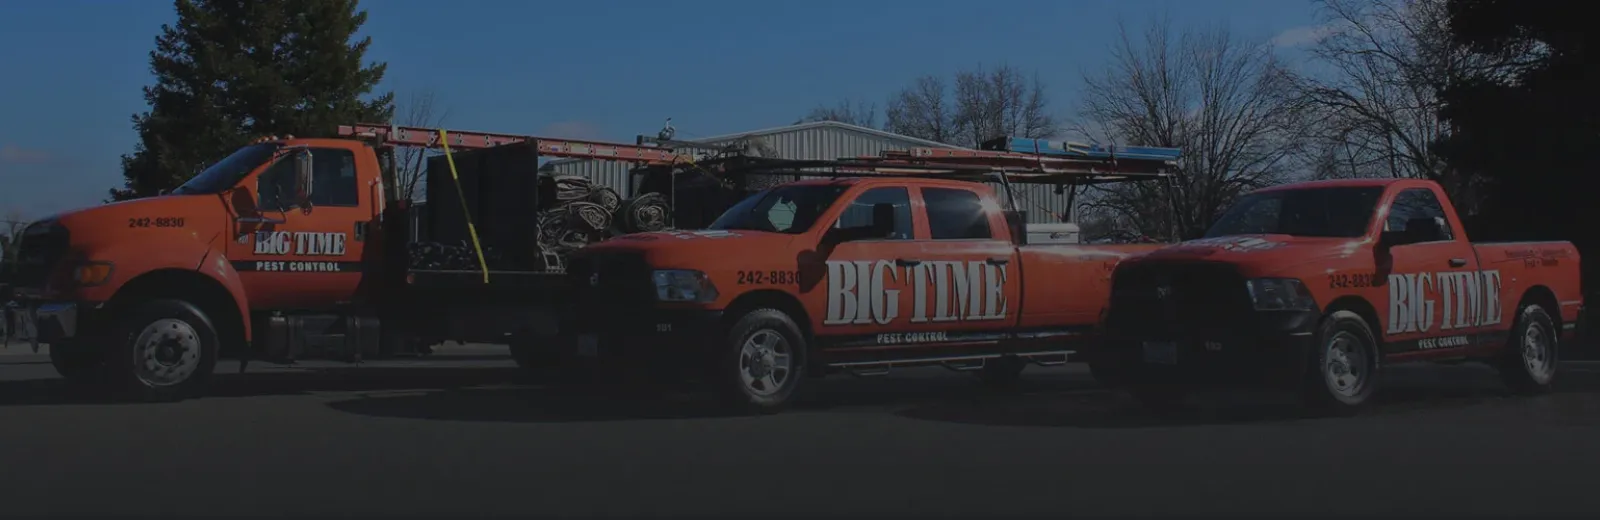 Big Time Pest Trucks